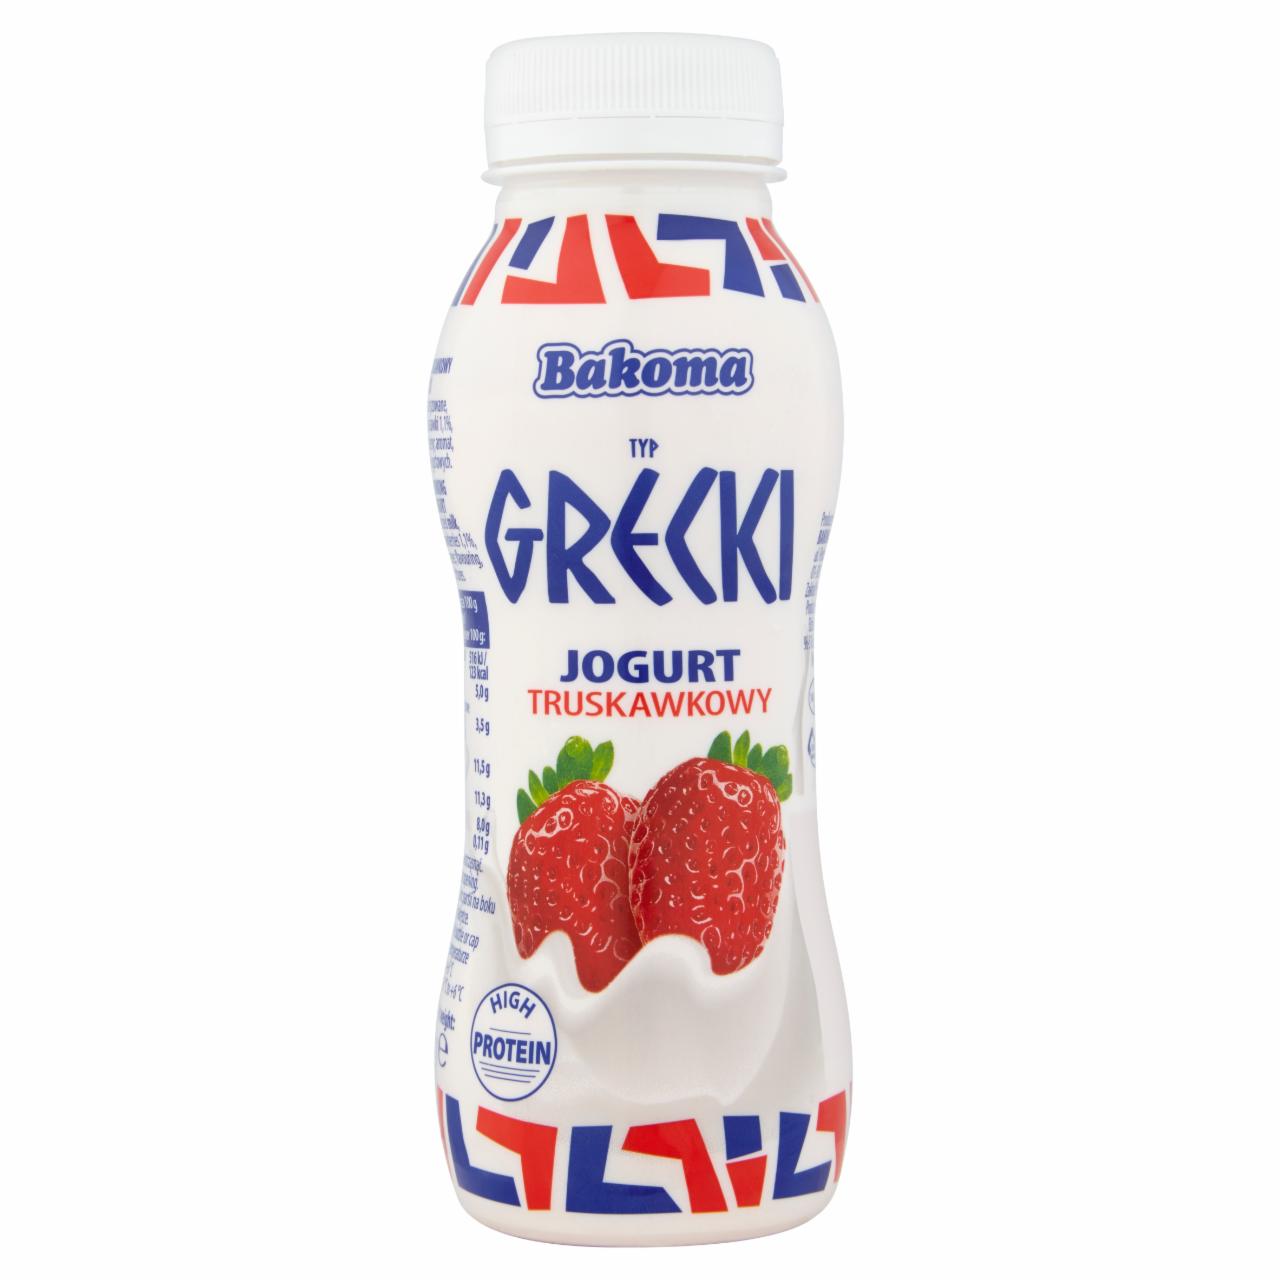 Zdjęcia - Bakoma Jogurt typ grecki truskawkowy 230 g